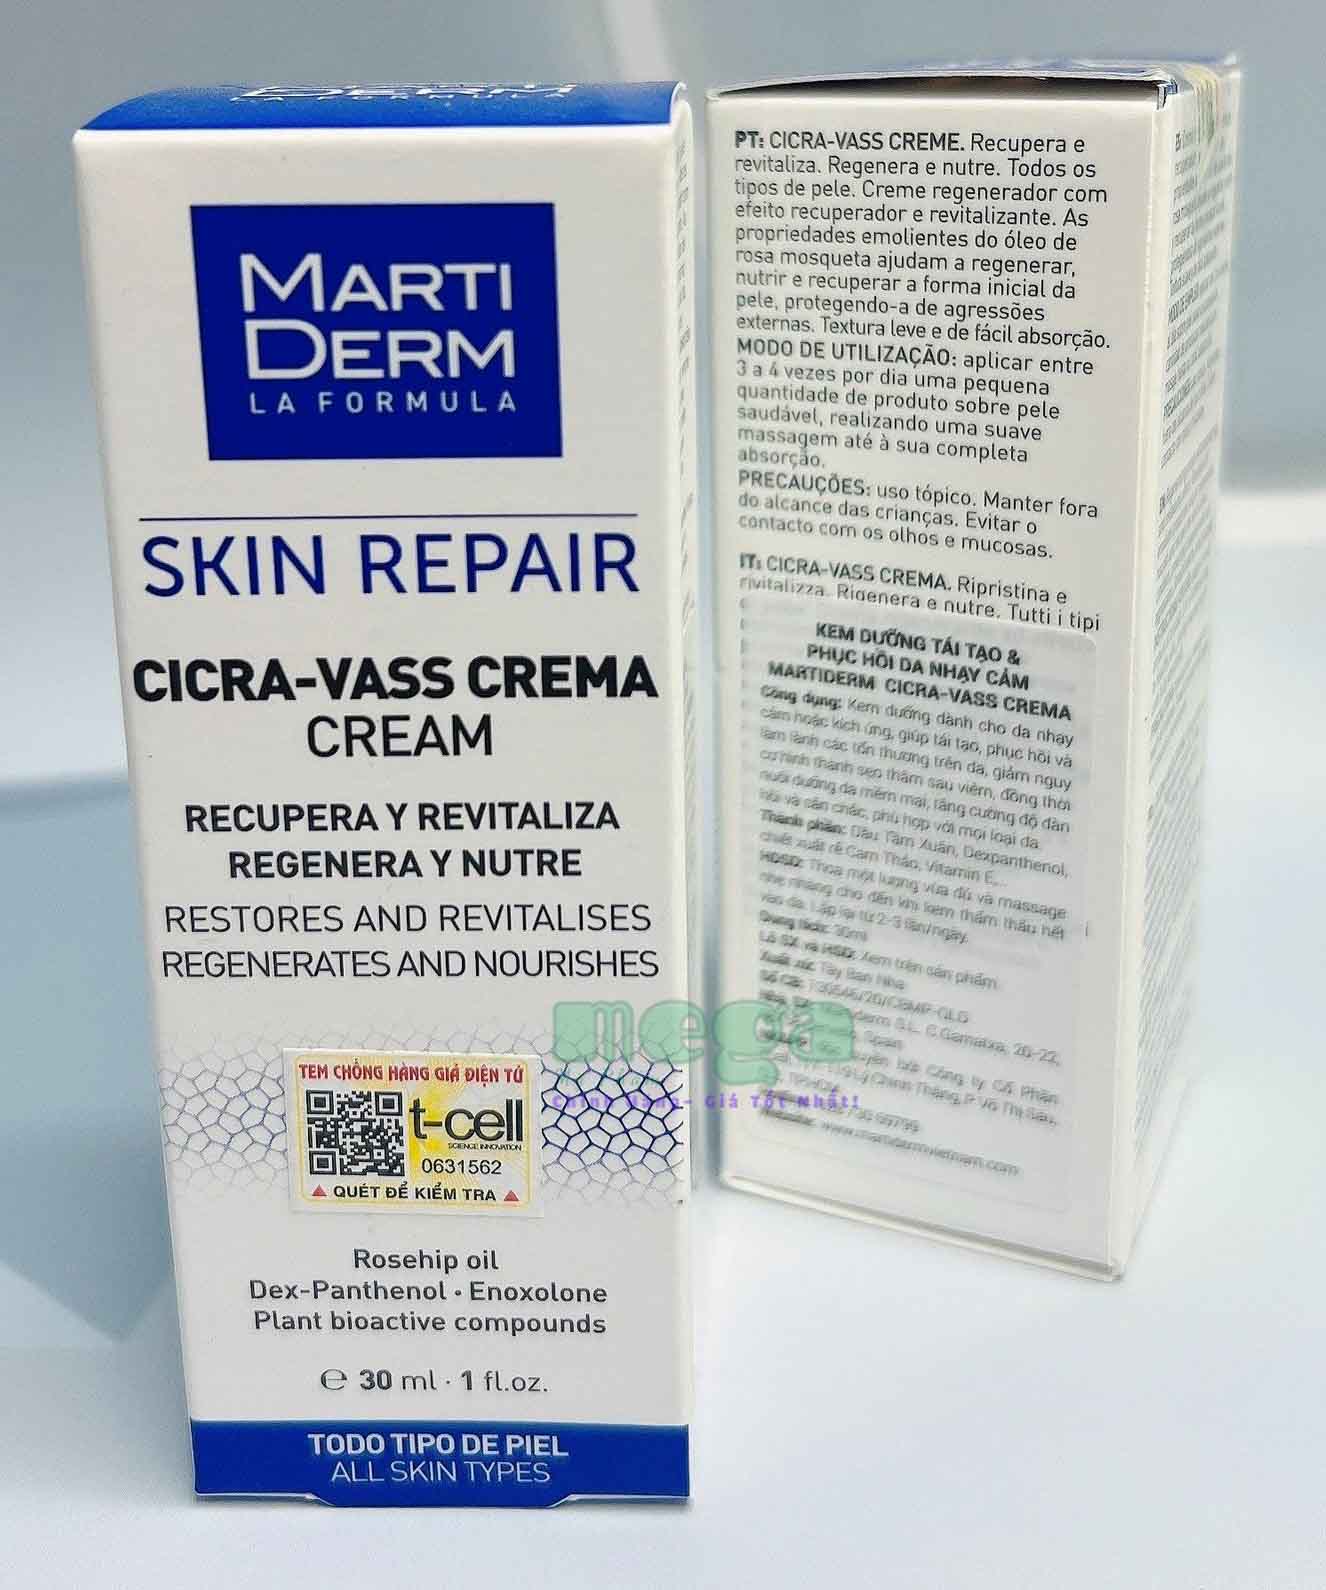 Martiderm Skin Repair Cicra-Vass Cream